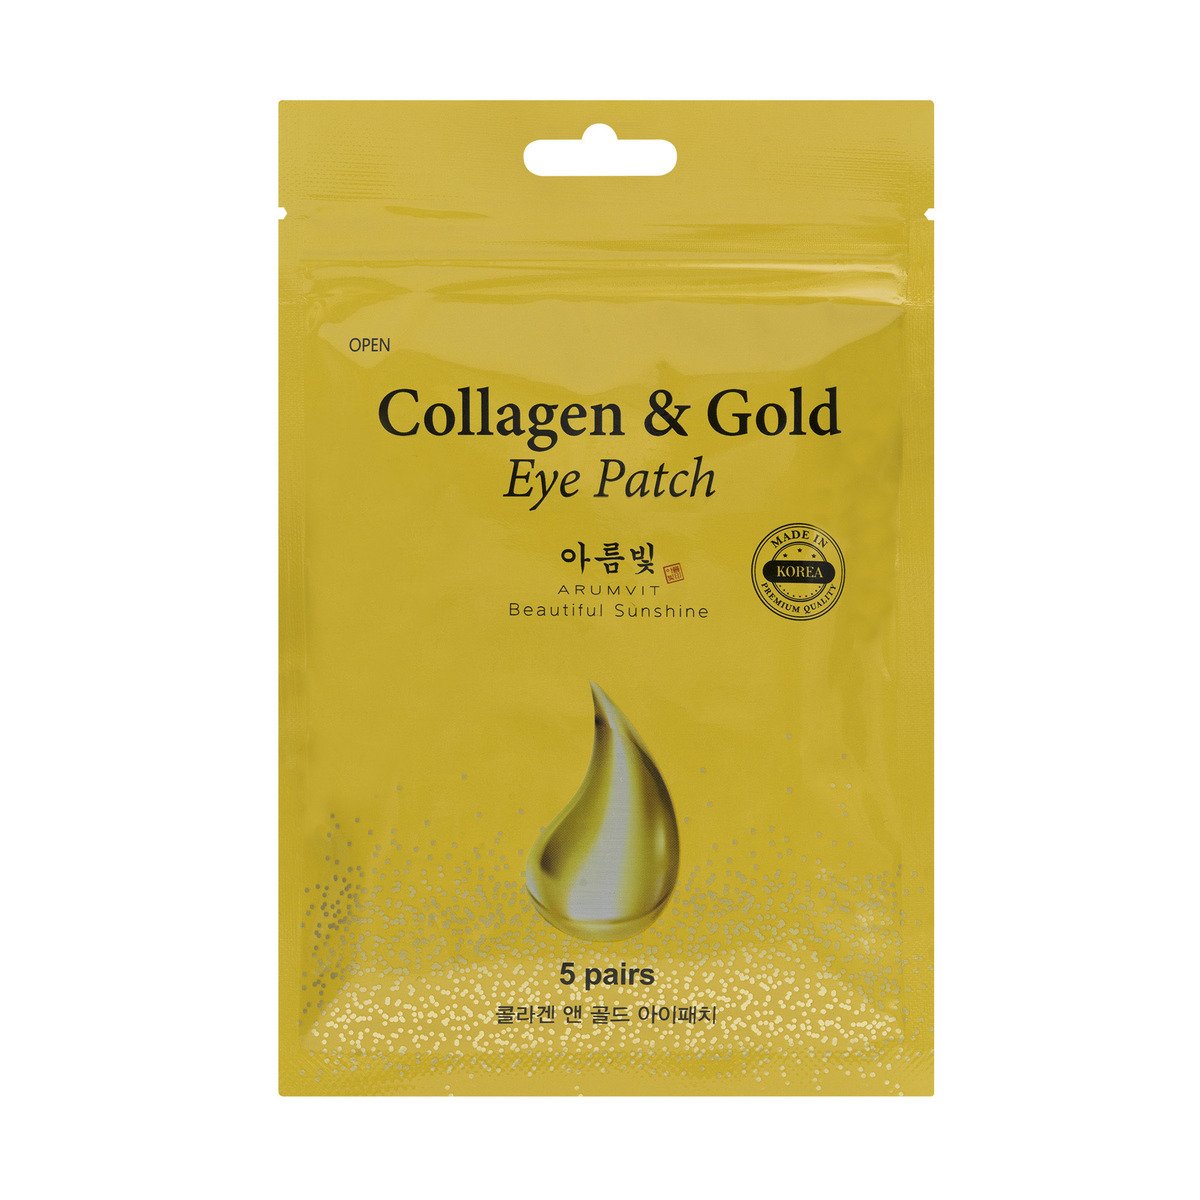 Arumvit Collagen & Gold Eye Patch Pouch 5 Pairs